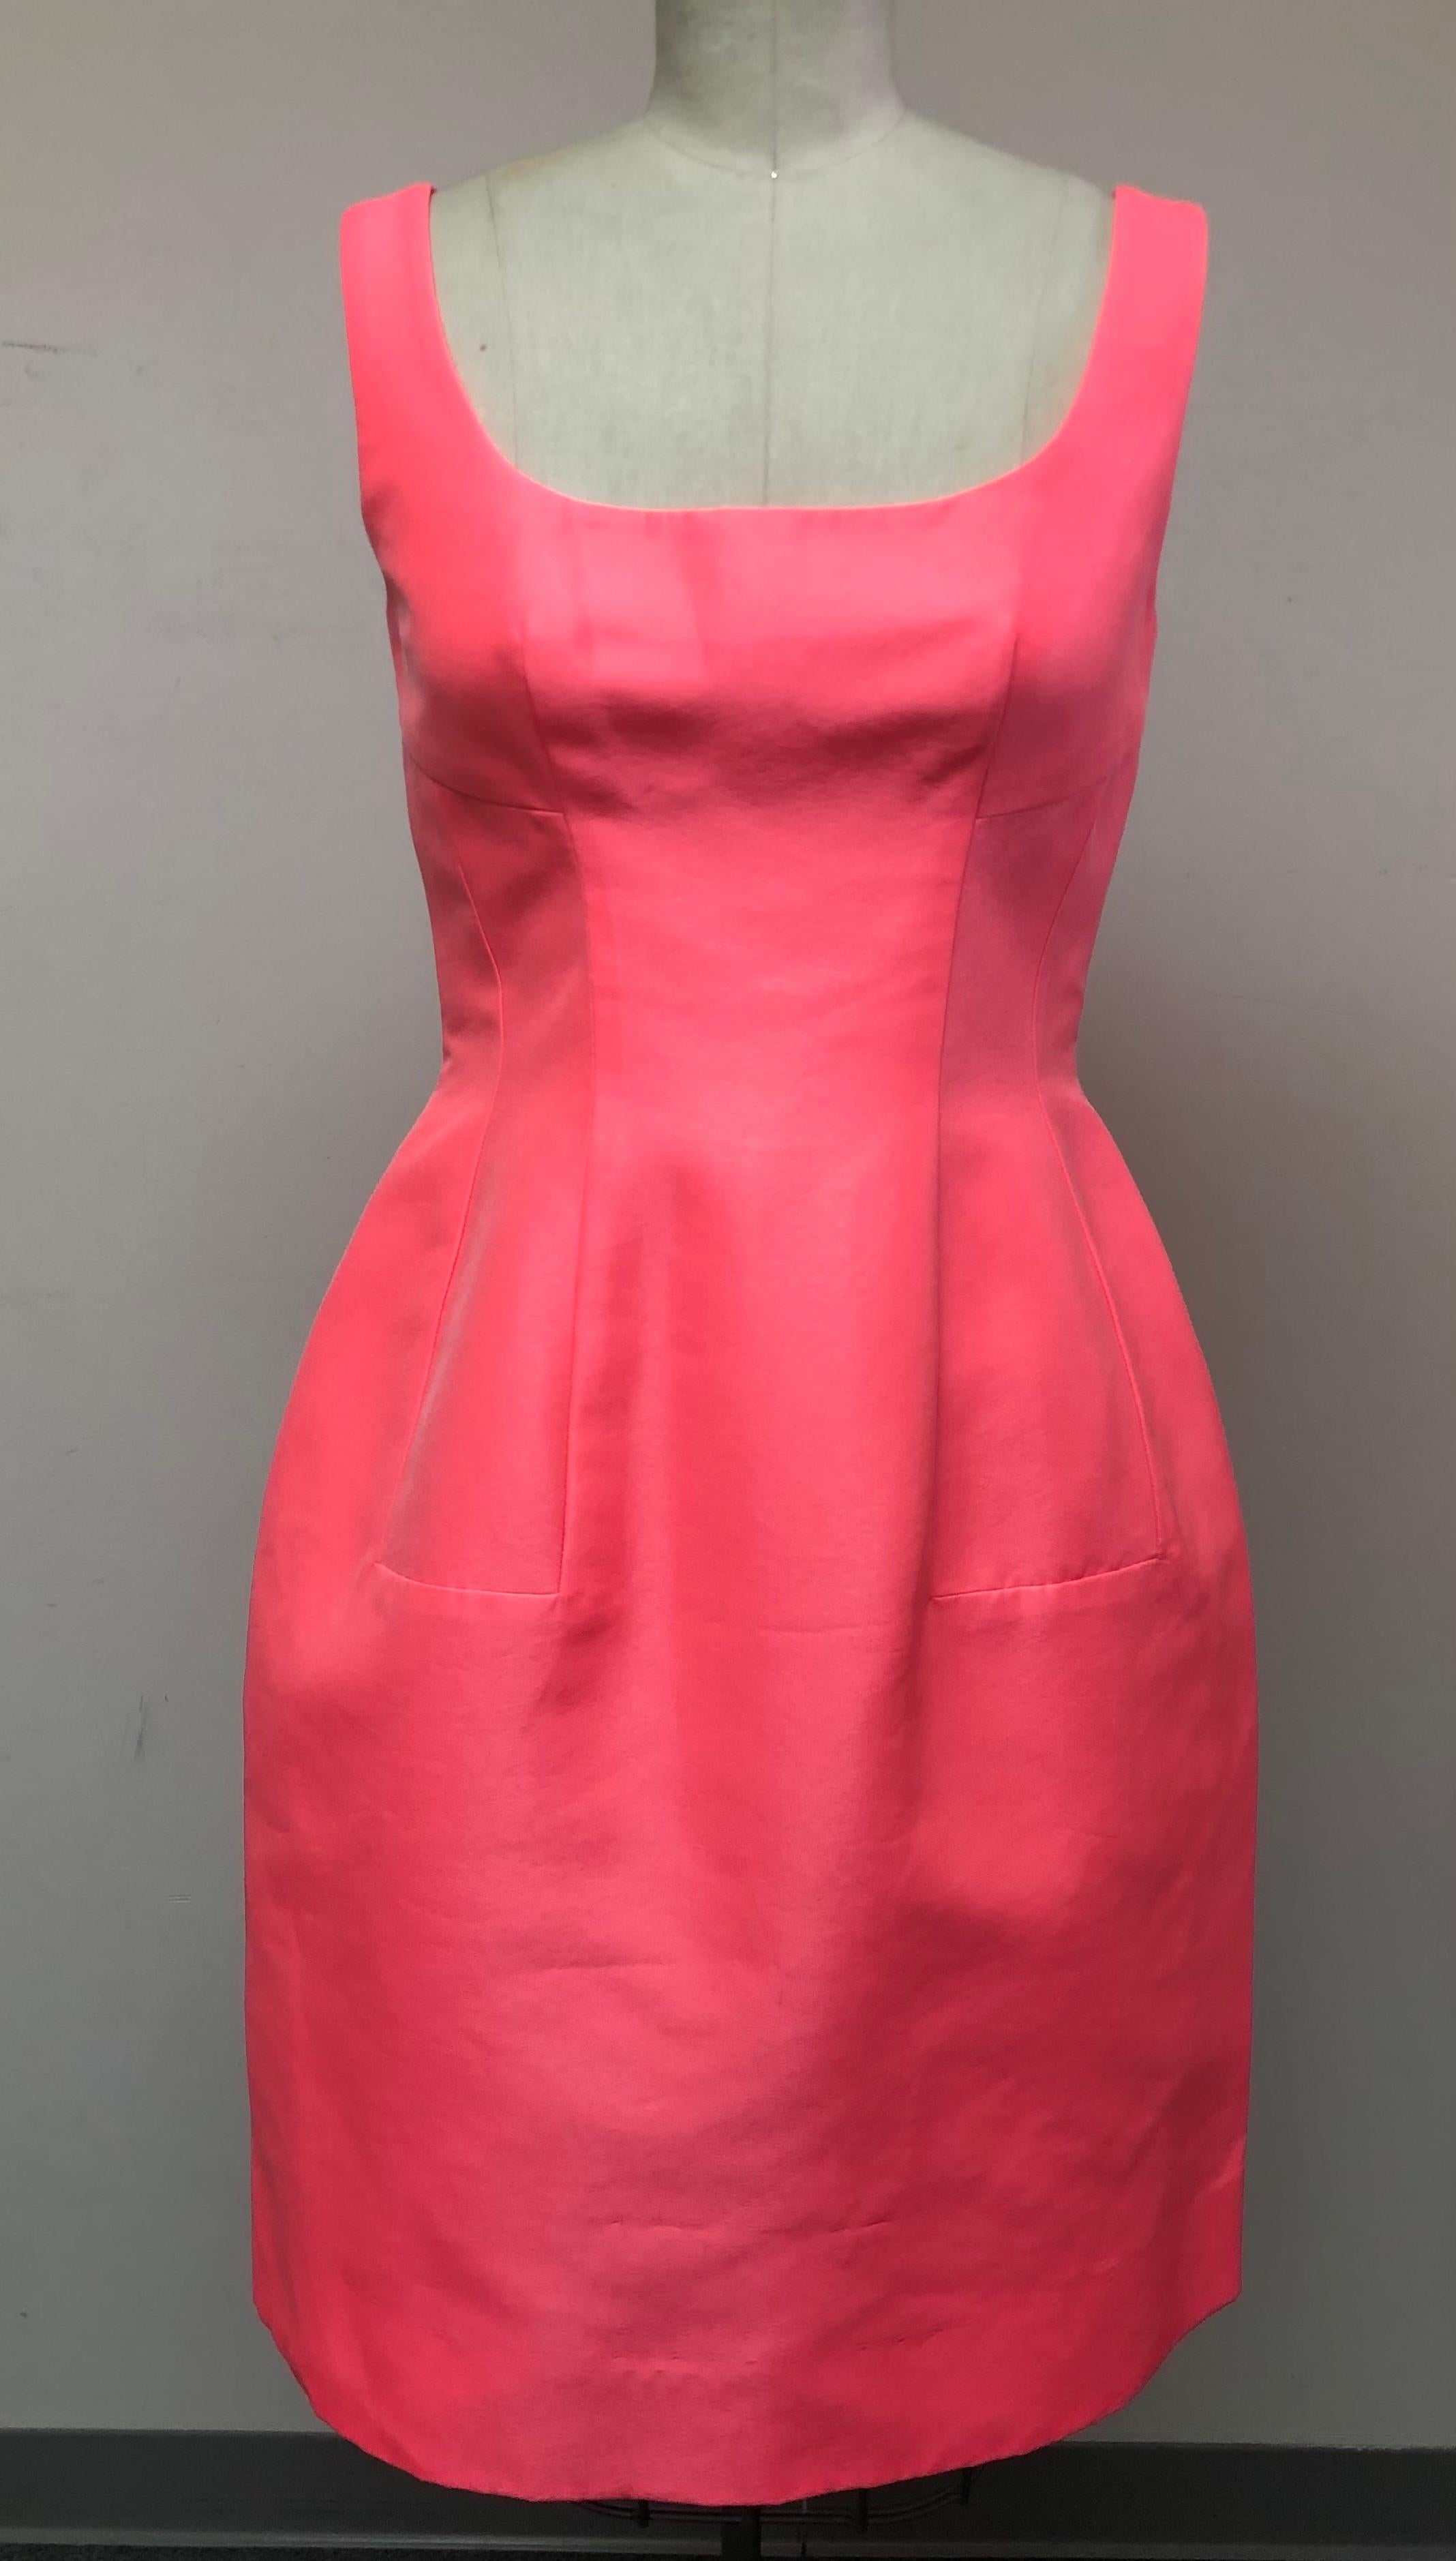 La couleur de cette robe est sublime. Soie rose vif d'Italie. Sans manches avec encolure dégagée. La jupe a une belle ampleur avec 
qui lui confèrent un aspect unique.
Portée pour un cocktail ou un dîner lors d'une soirée estivale ou en tant